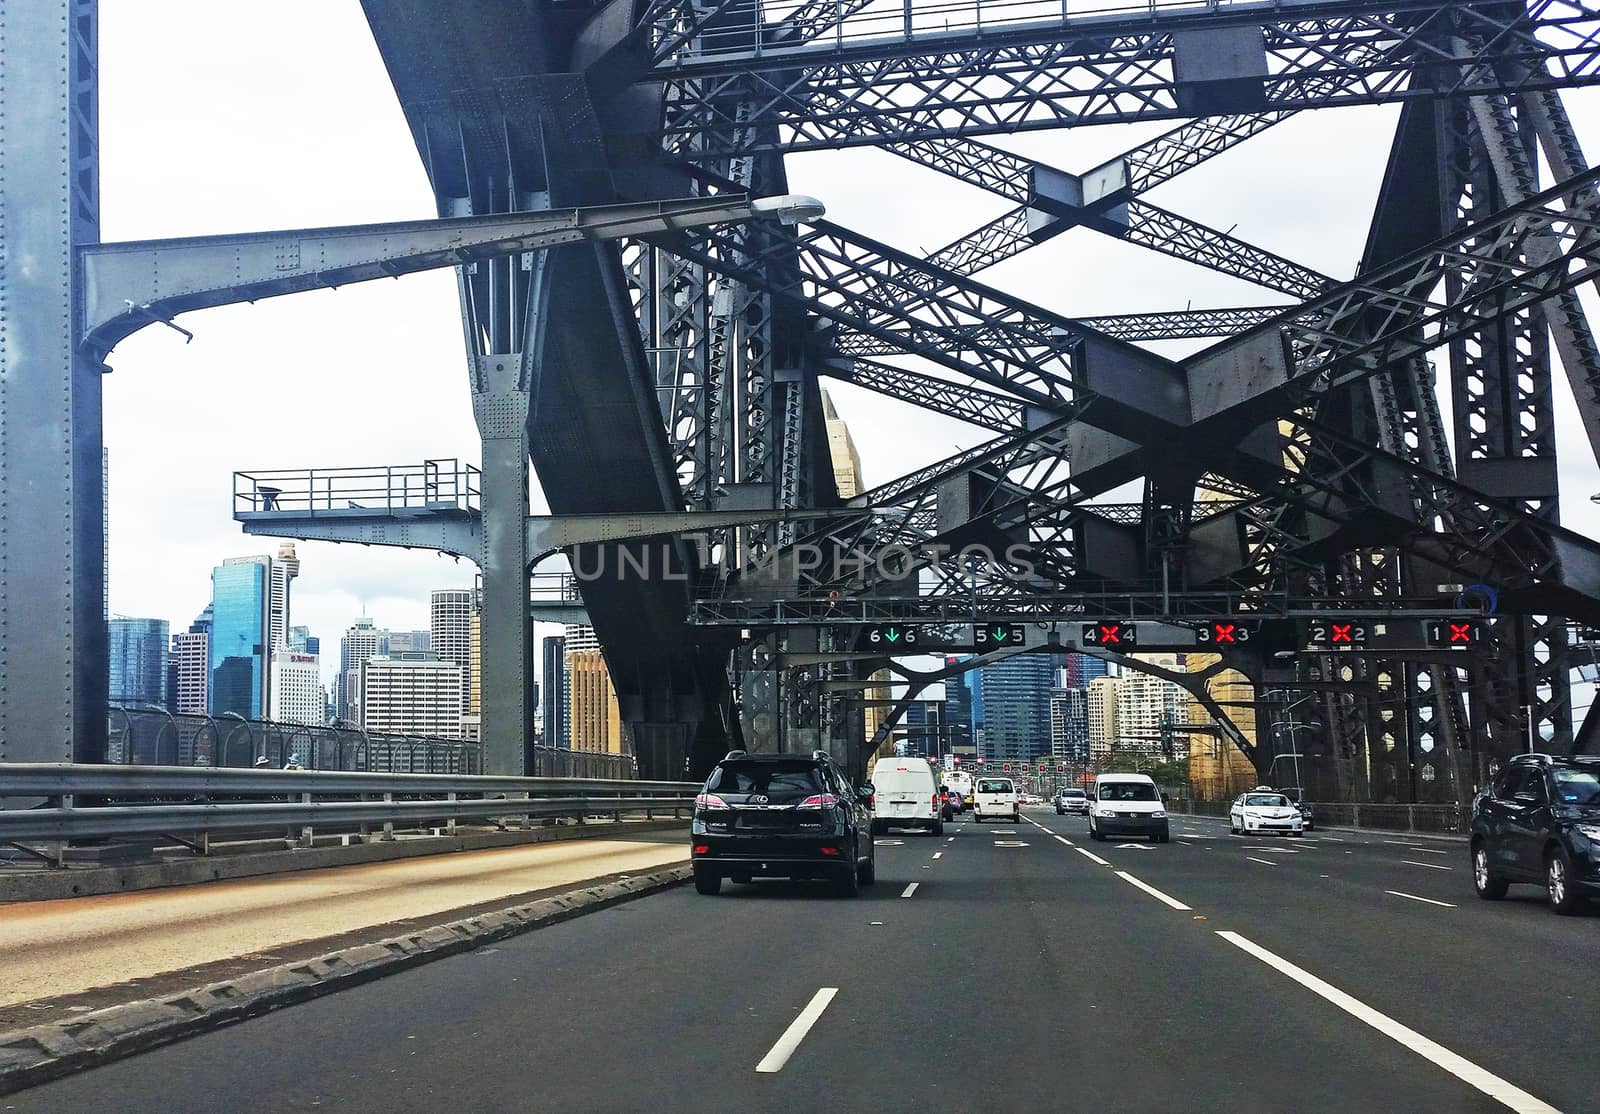 Sydney Harbour Bridge by jol66